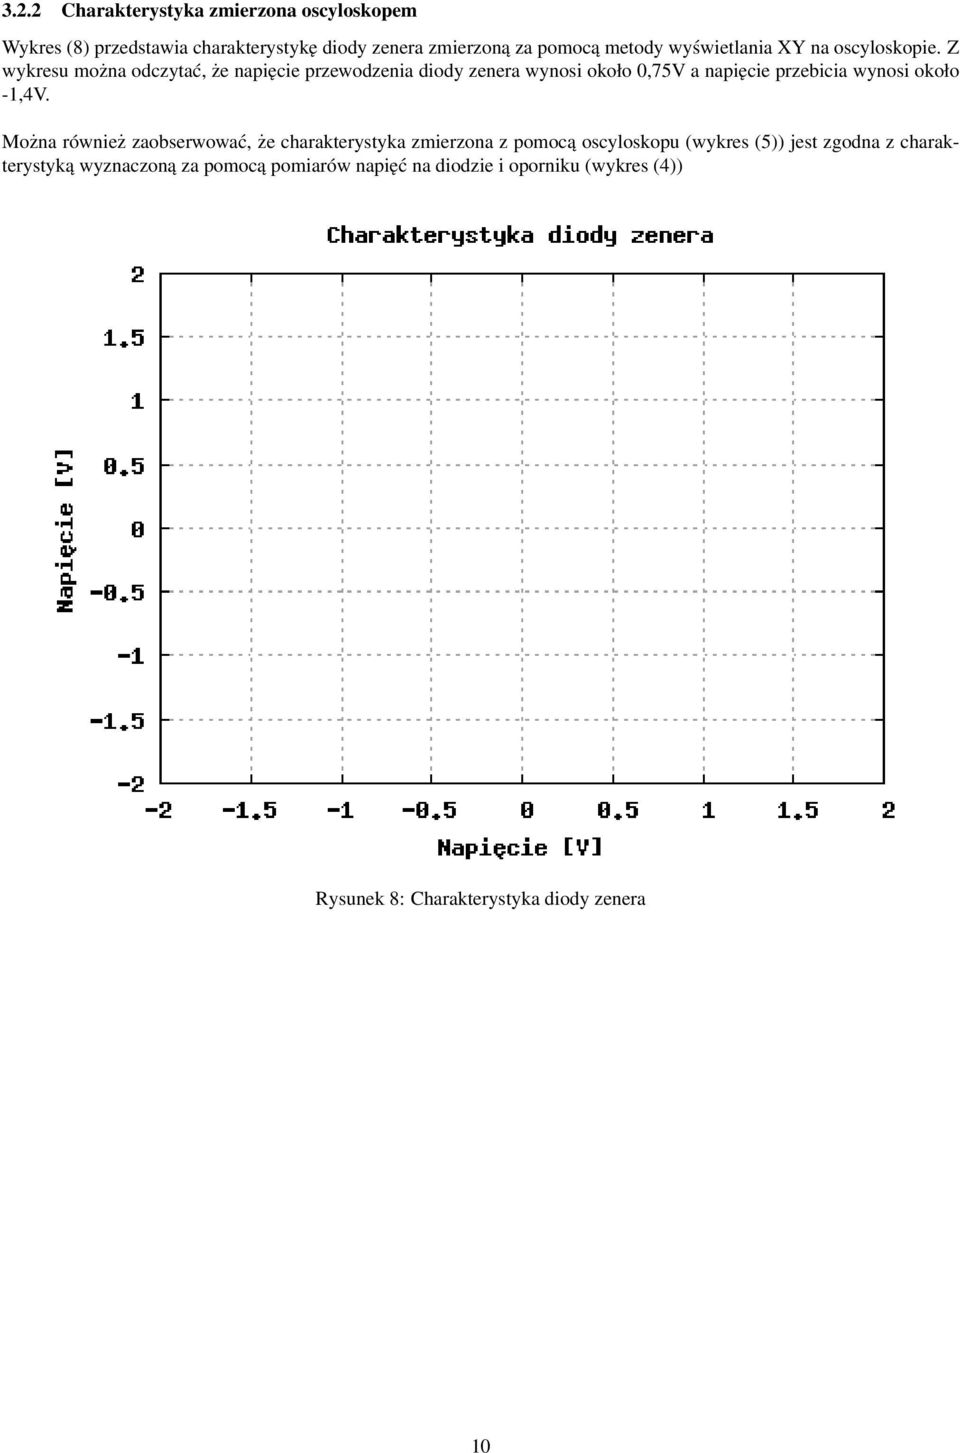 Z wykresu można odczytać, że napięcie przewodzenia diody zenera wynosi około 0,75V a napięcie przebicia wynosi około -1,4V.